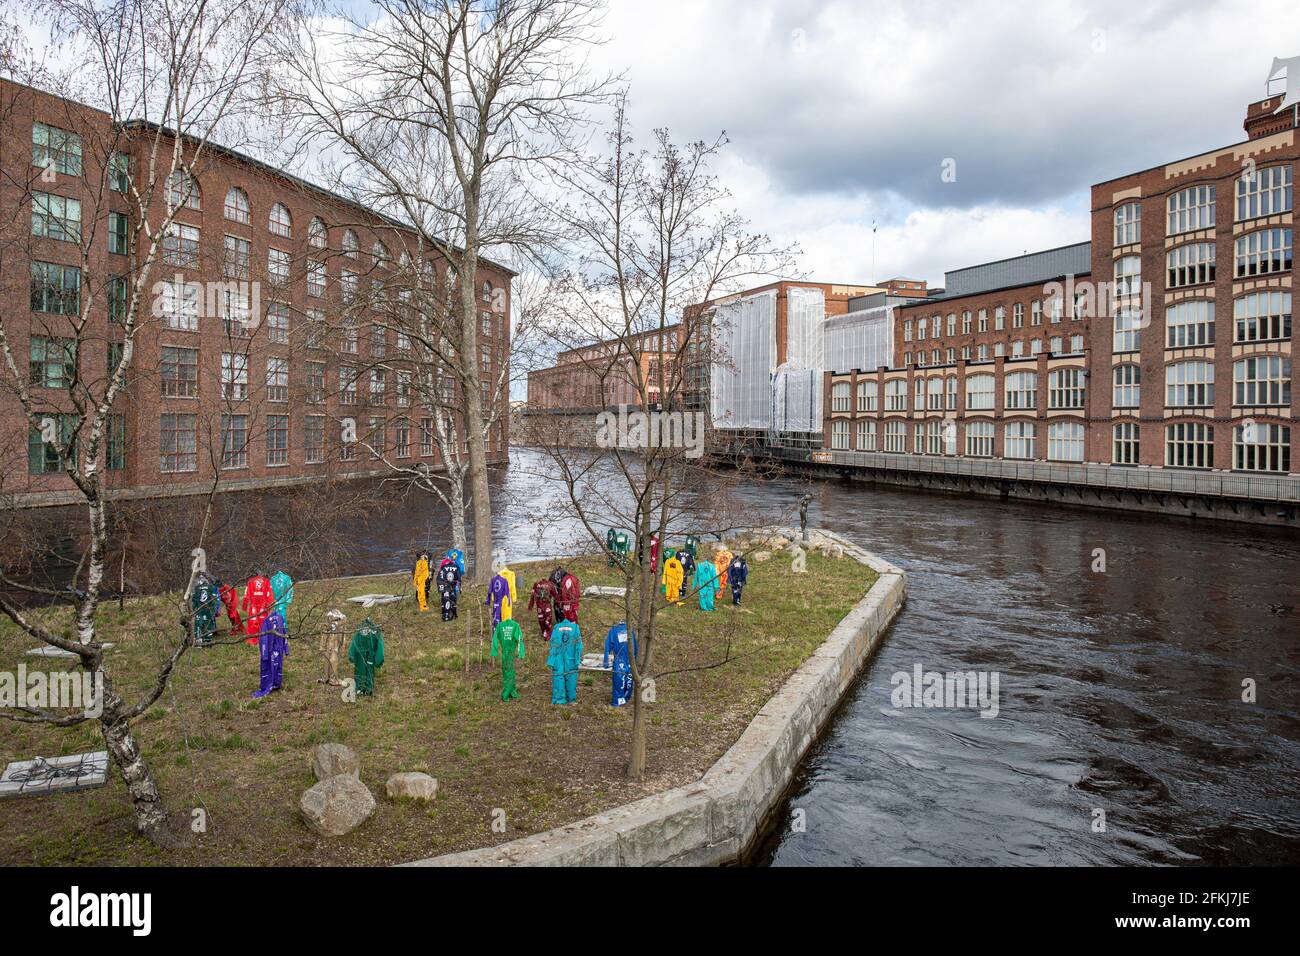 Studenten decken am 1. Mai in Tampere, Finnland, Fluganzüge auf Konsulinsaari ab Stockfoto